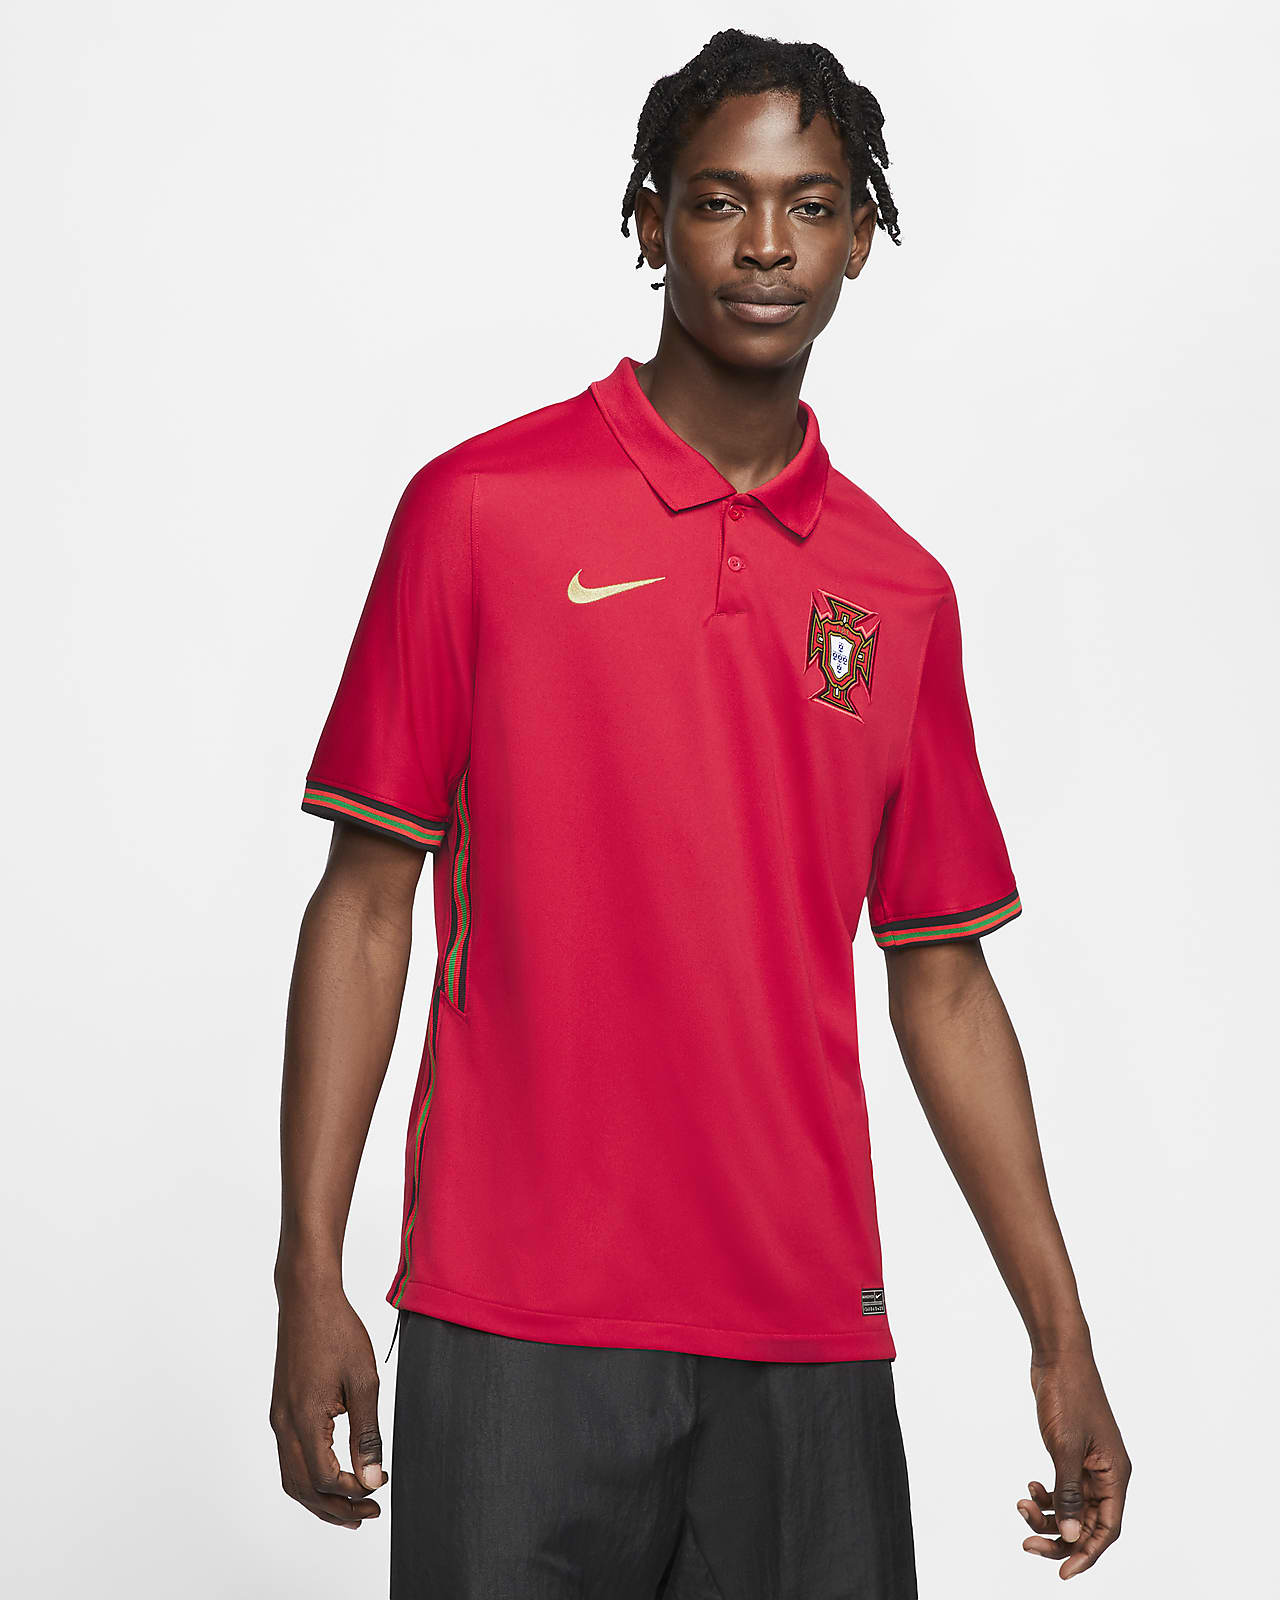 Surichinmoi suficiente semanal Camiseta de fútbol para hombre Portugal 2020 Stadium Home. Nike.com